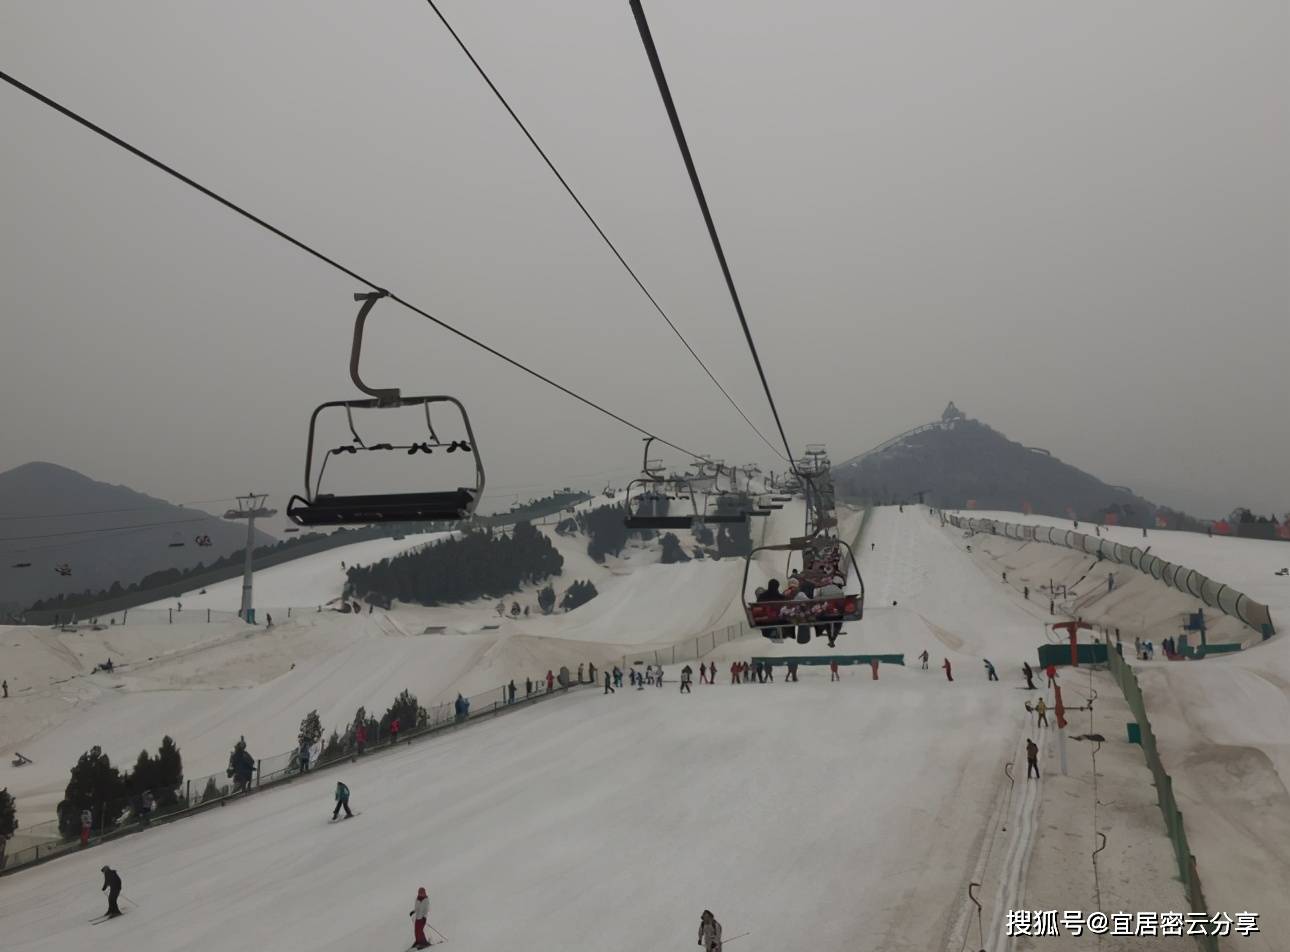 国外滑雪即视感打卡地——北京南山滑雪地